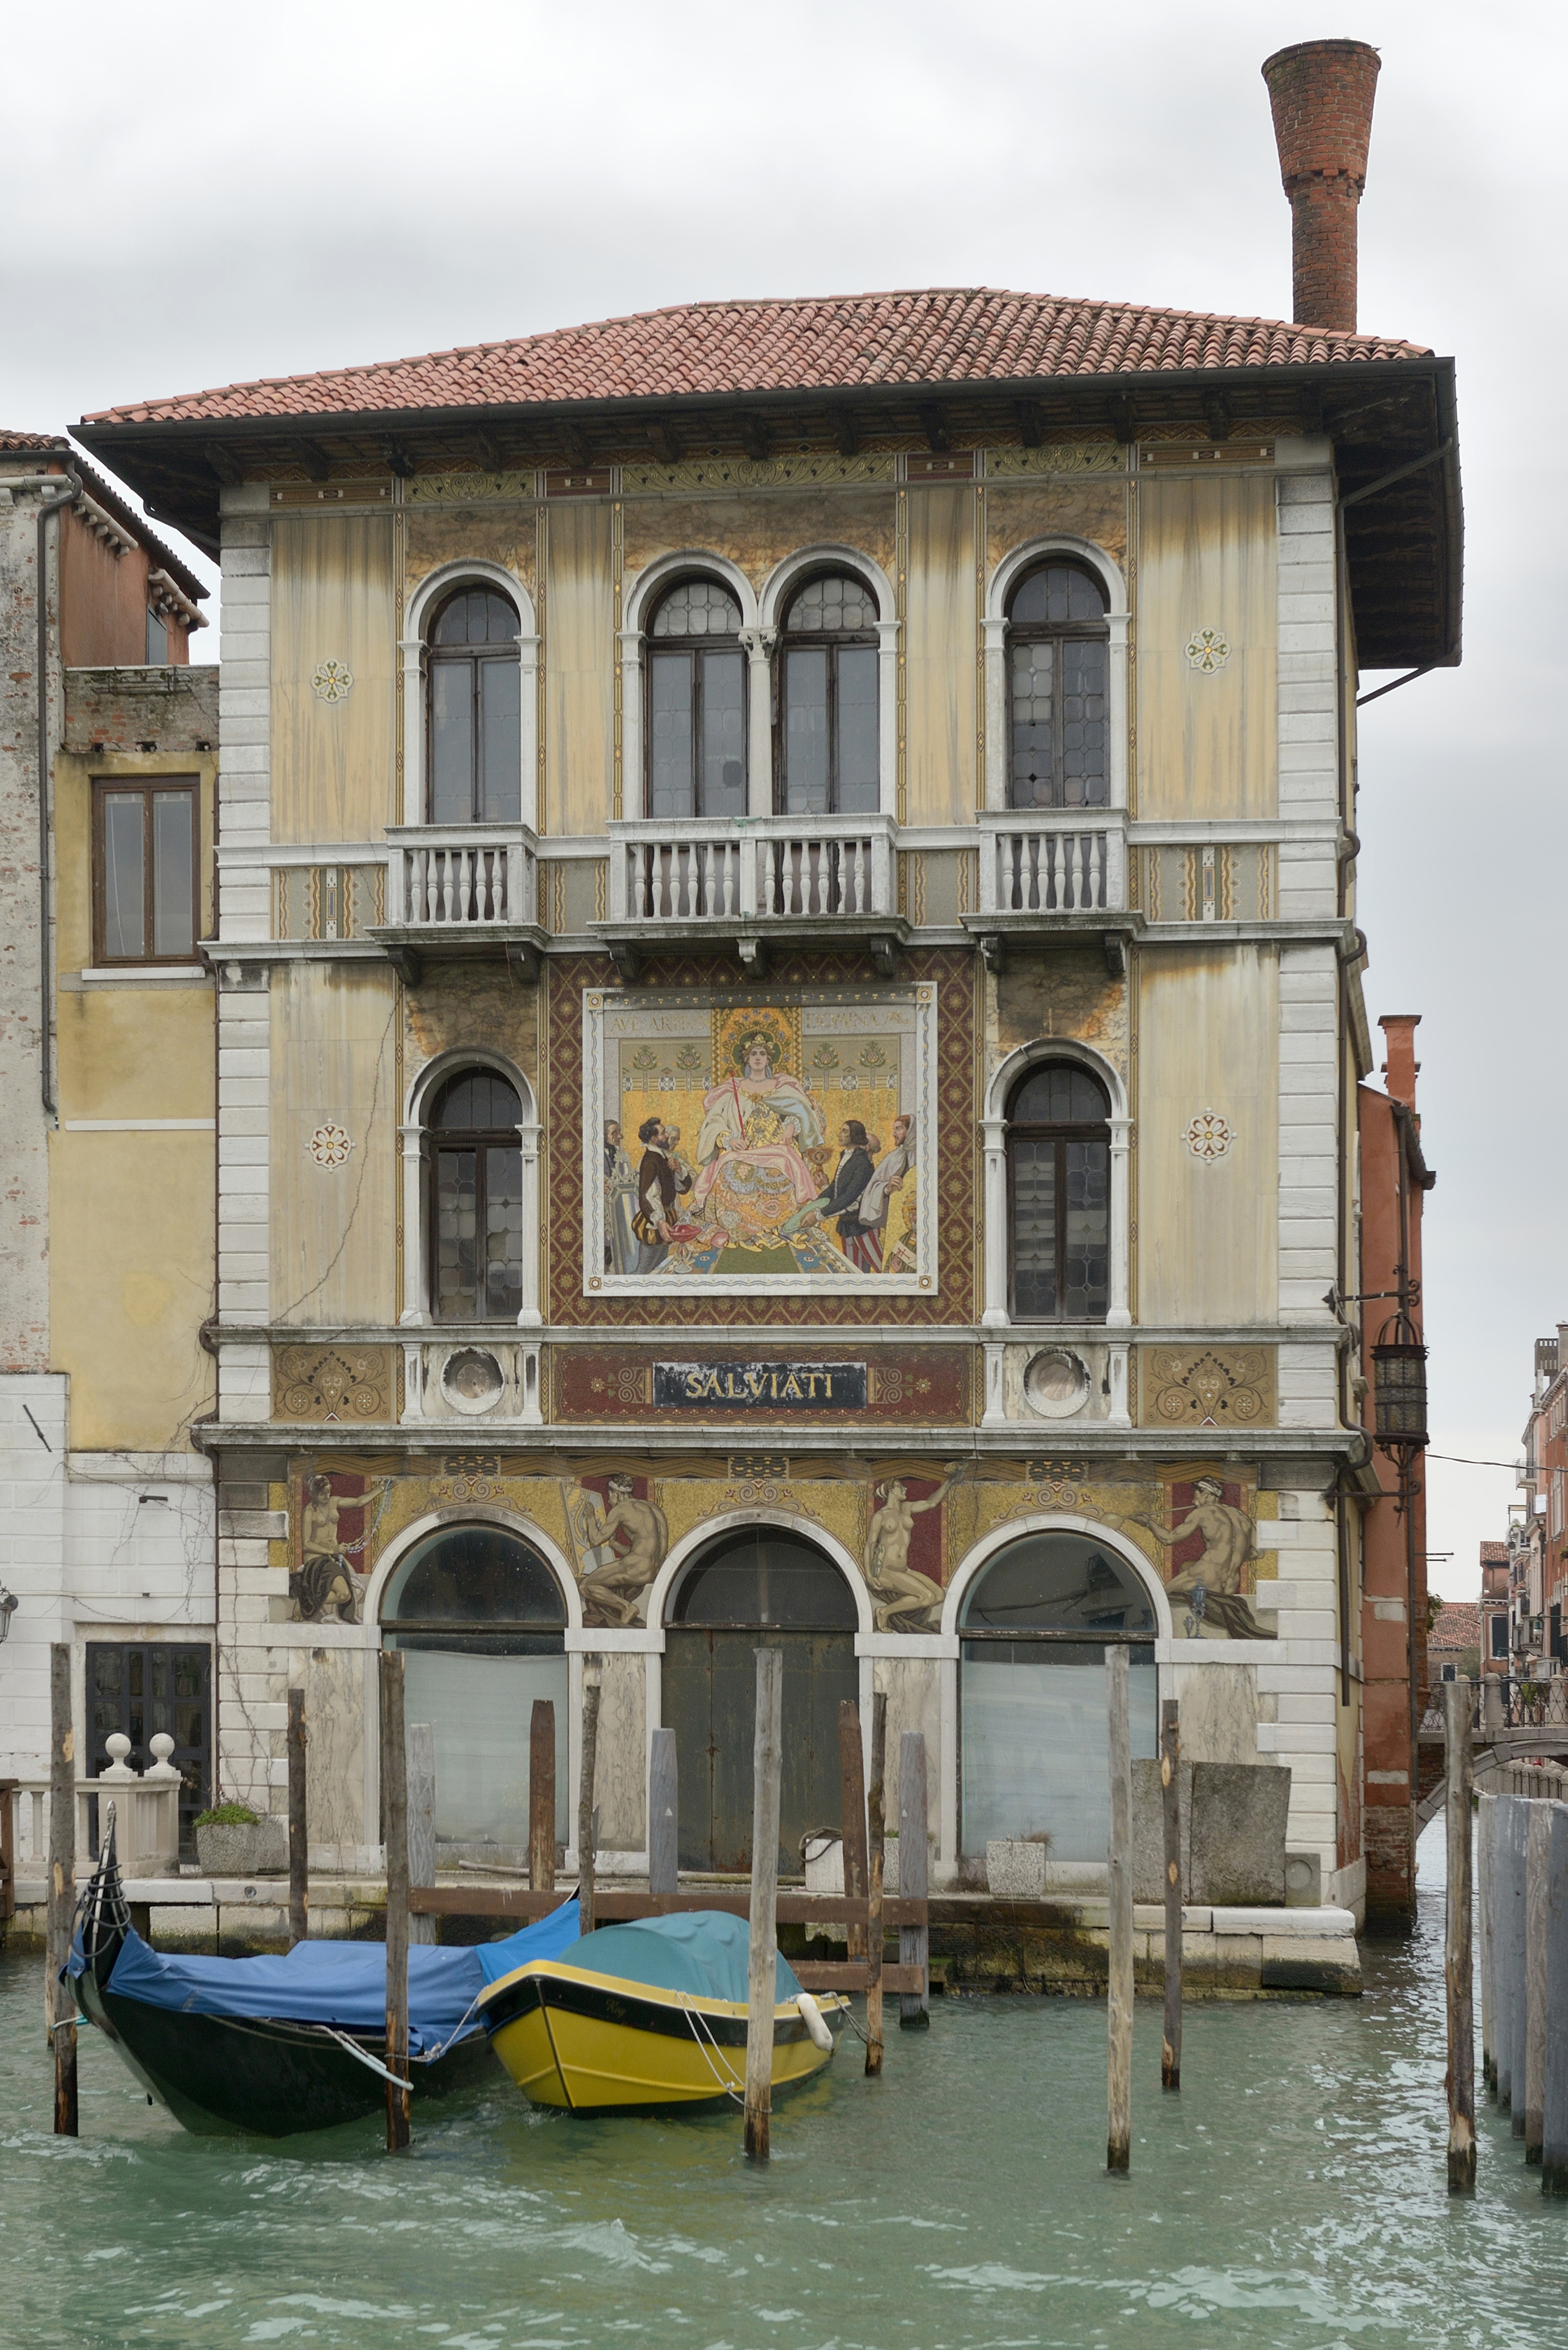 Palazzo Salviati Canal Grande Venezia